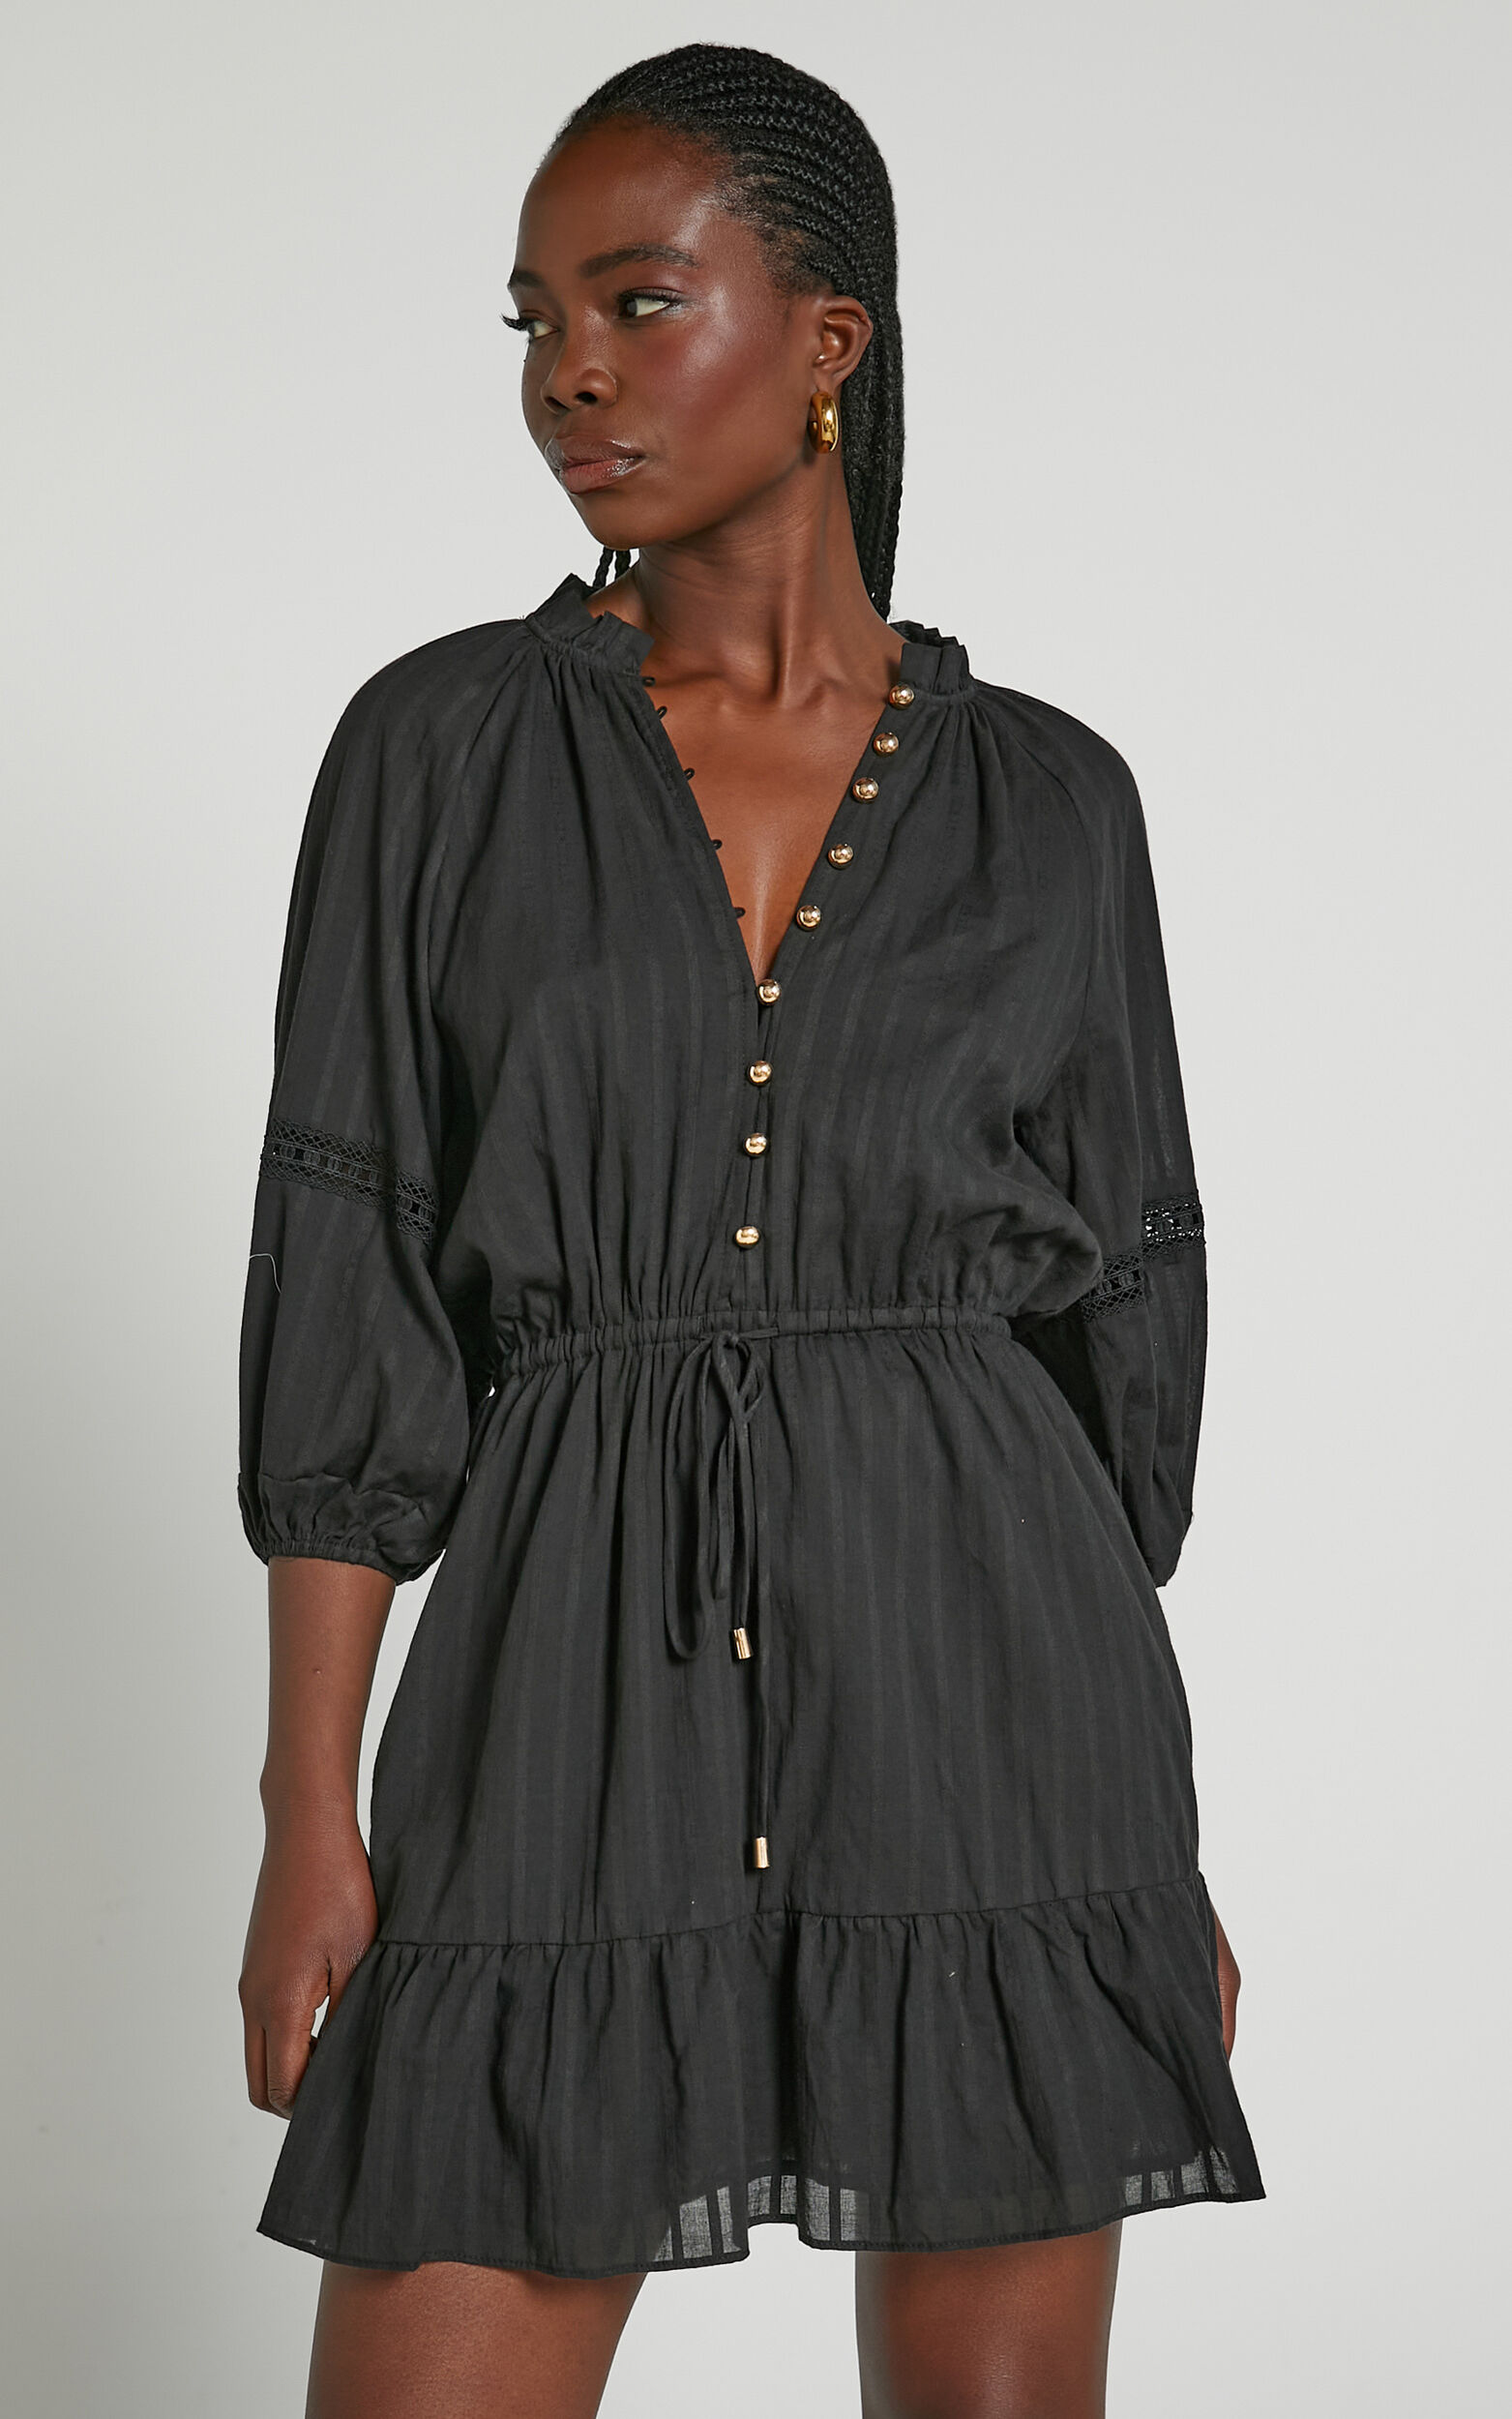 Carter Mini Dress - Tiered Trim Detail Dress in Black - 04, BLK1